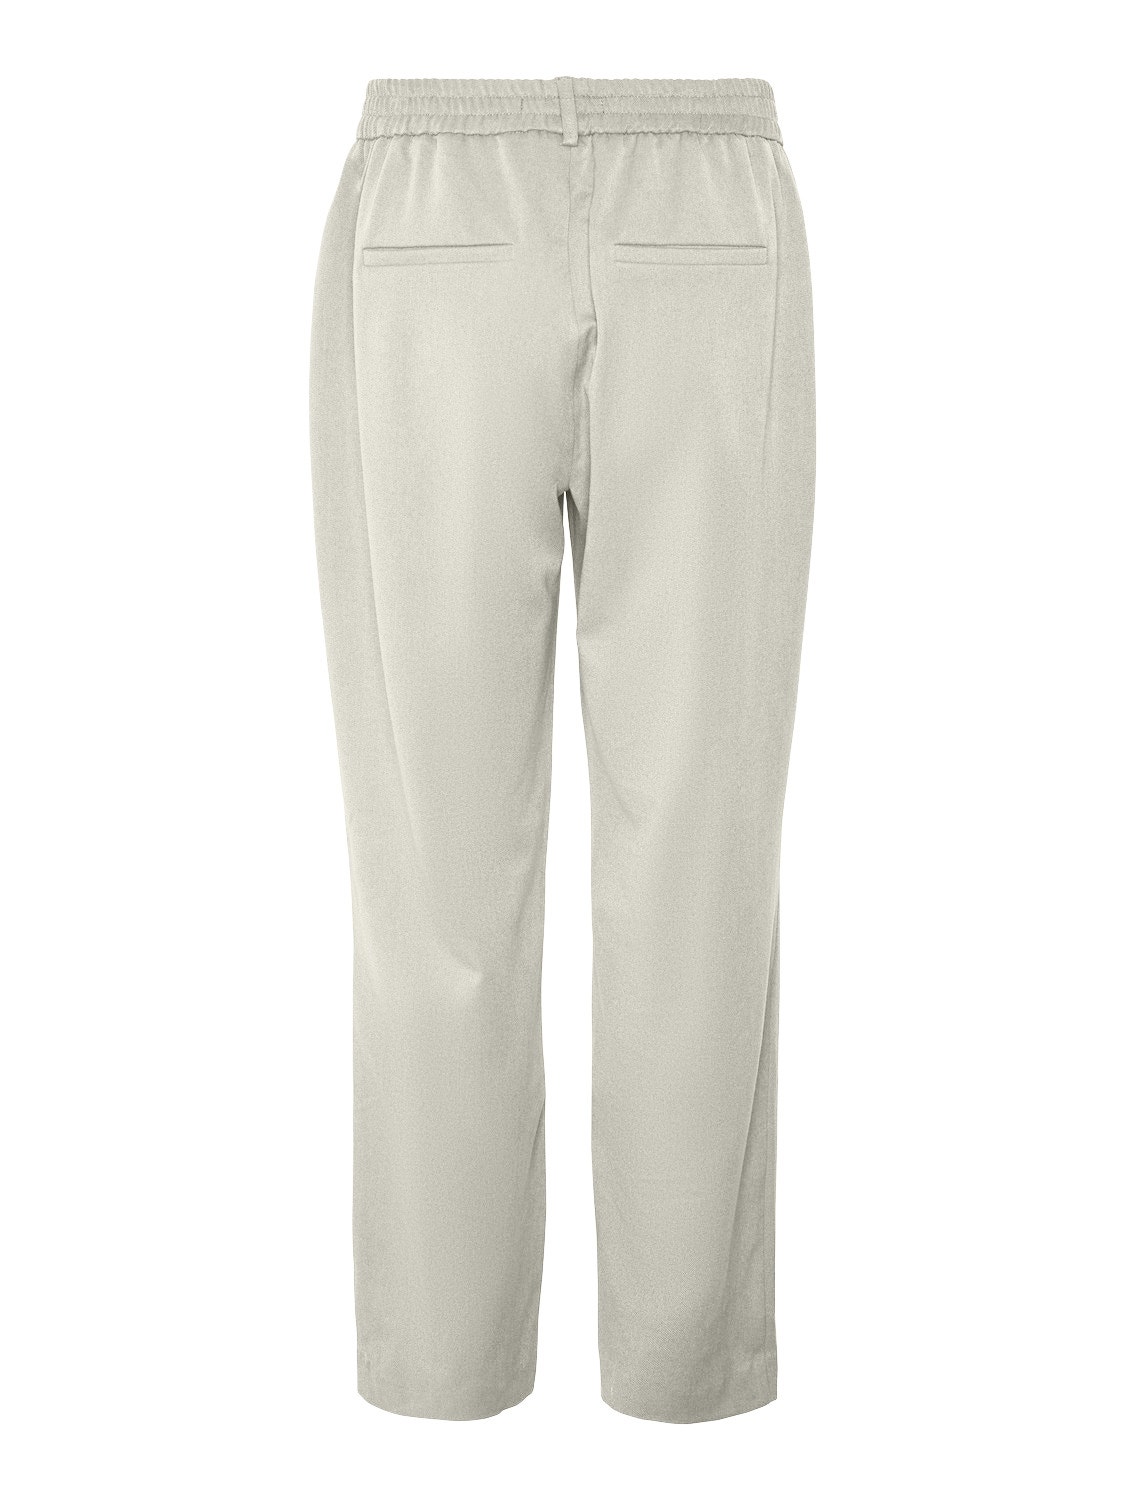 Vero Moda VMMAYA Spodnie -Light Grey Melange - 10267718